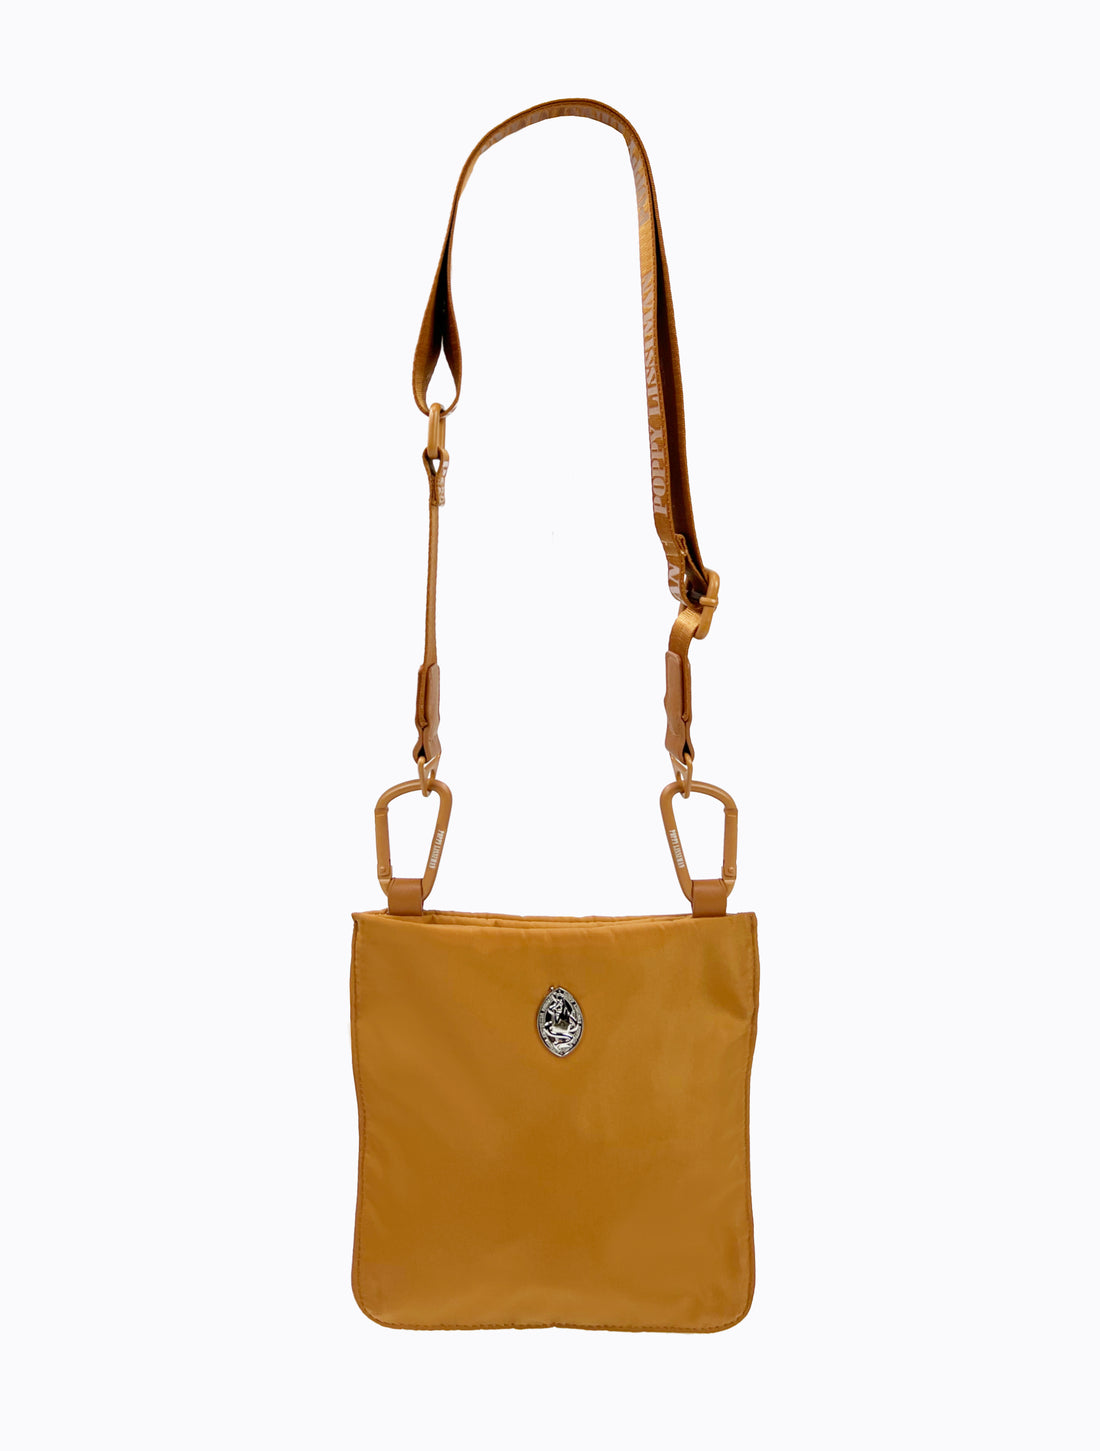 Jacques Shoulder Bag - Camel – Poppy Lissiman US